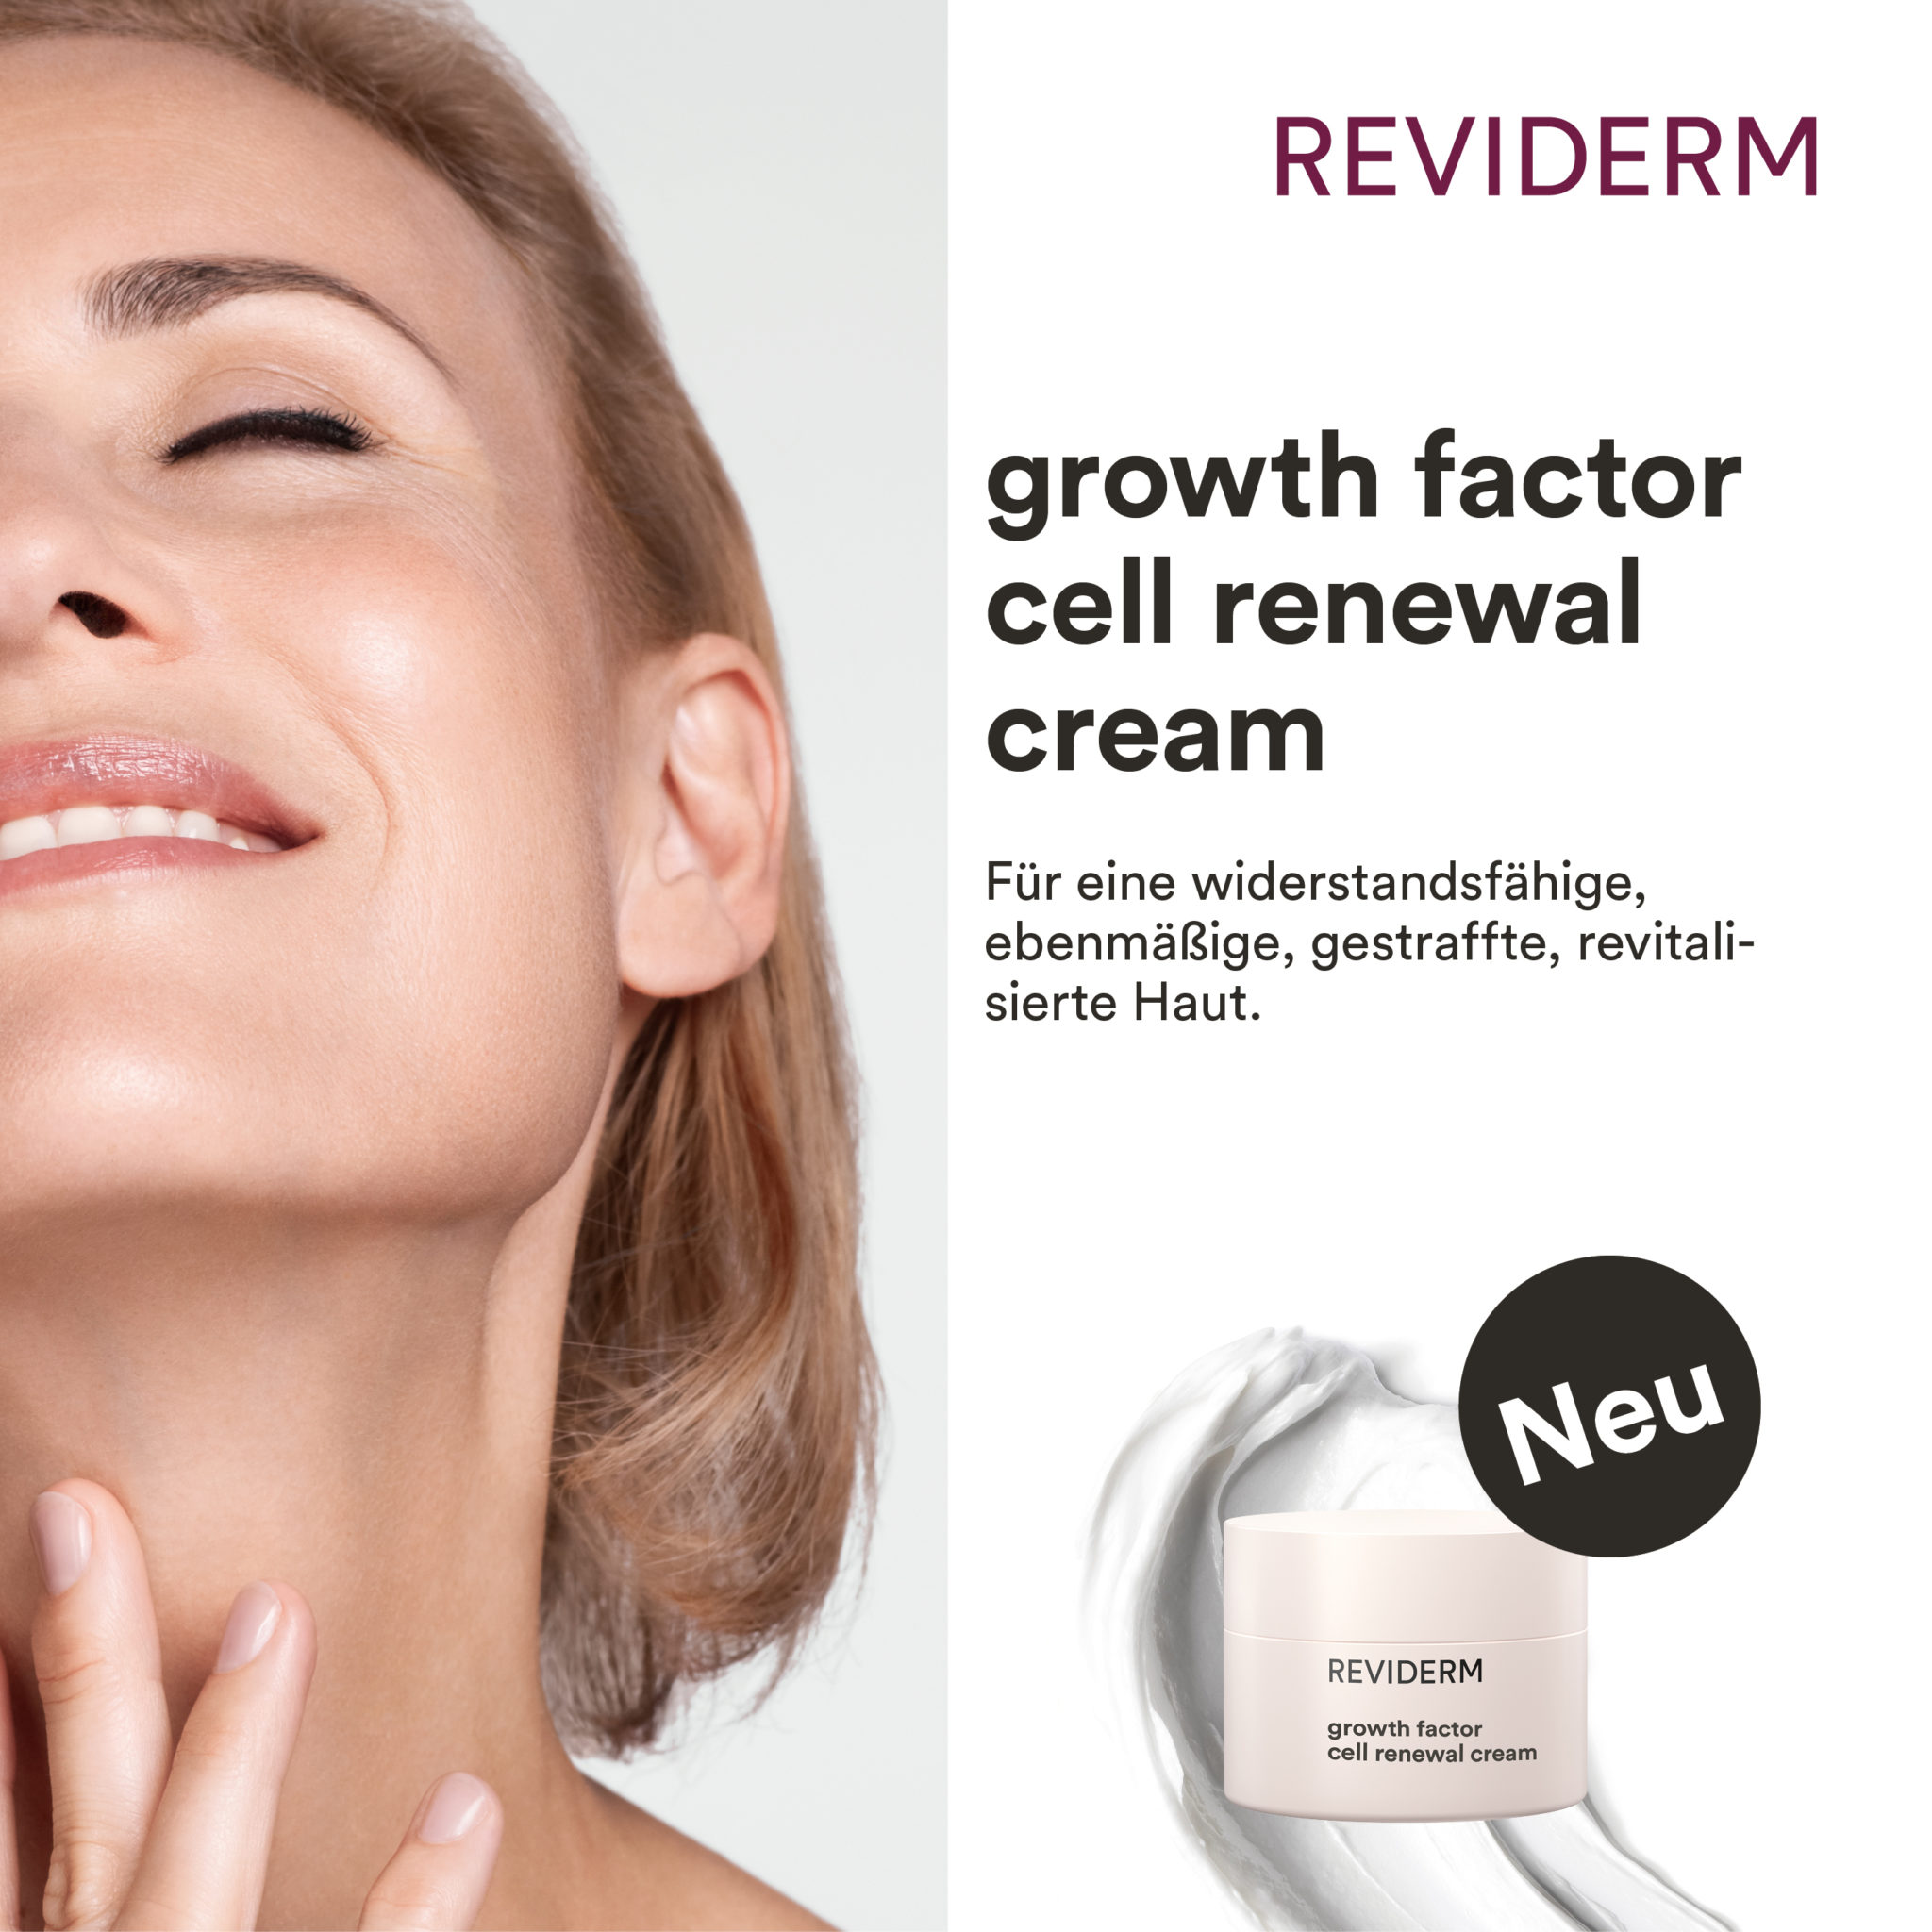 REVIDERM growth factor cell renewal cream | Zellaktivierende 24h-Creme mit Wachstumsfaktor-Komplex